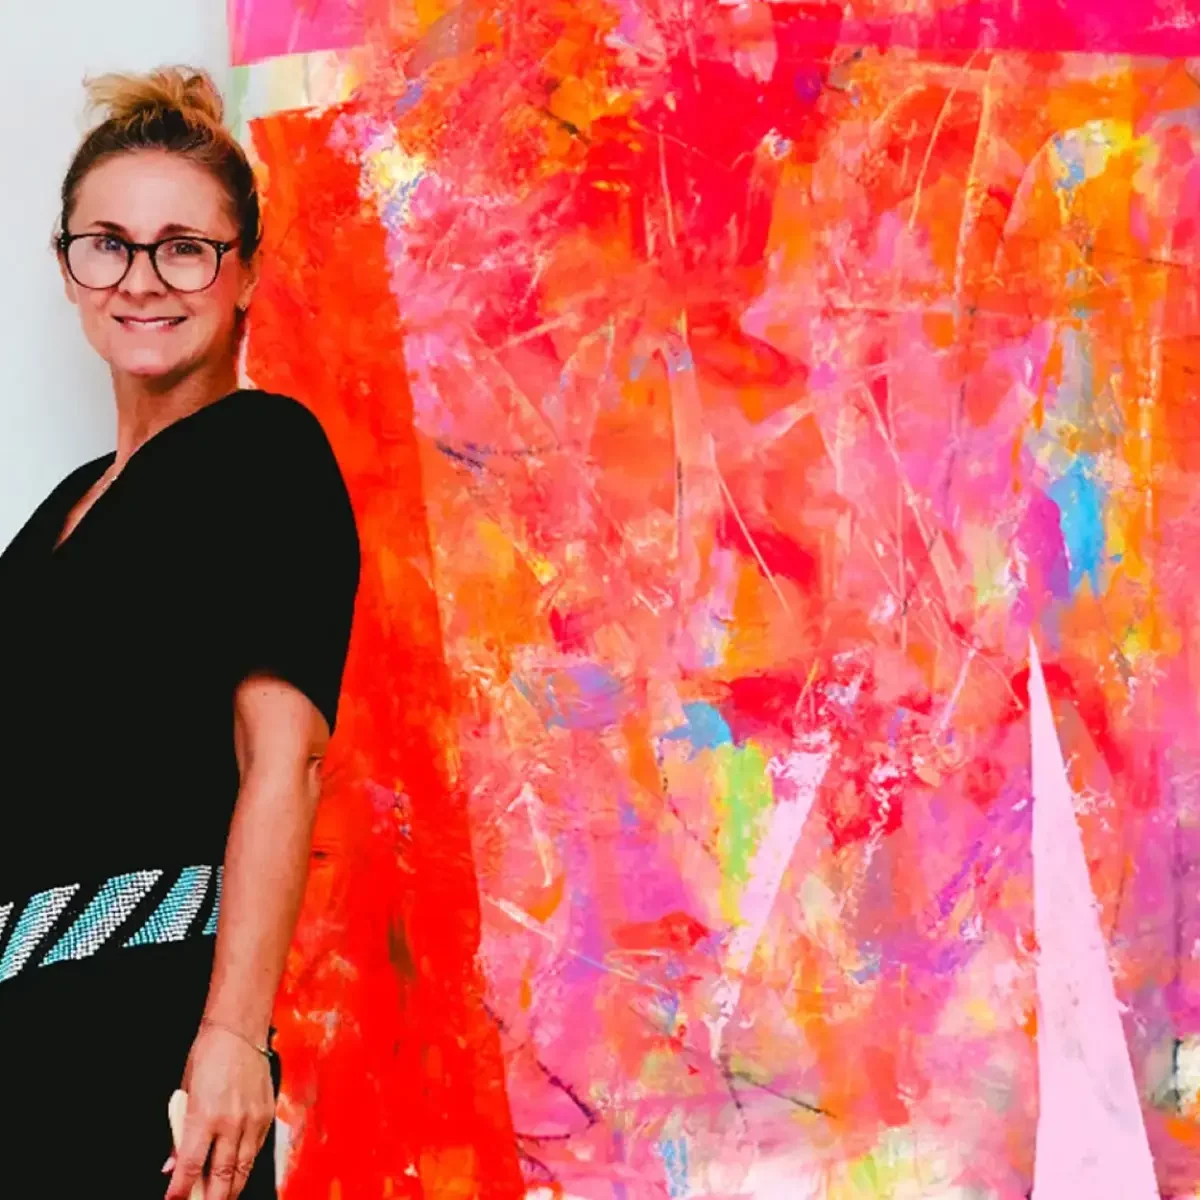 Die Künstlerin Annette Sandt steht vor einem ihrer lebendigen Werke, umgeben von knalligen Farben und pulsierender Energie.